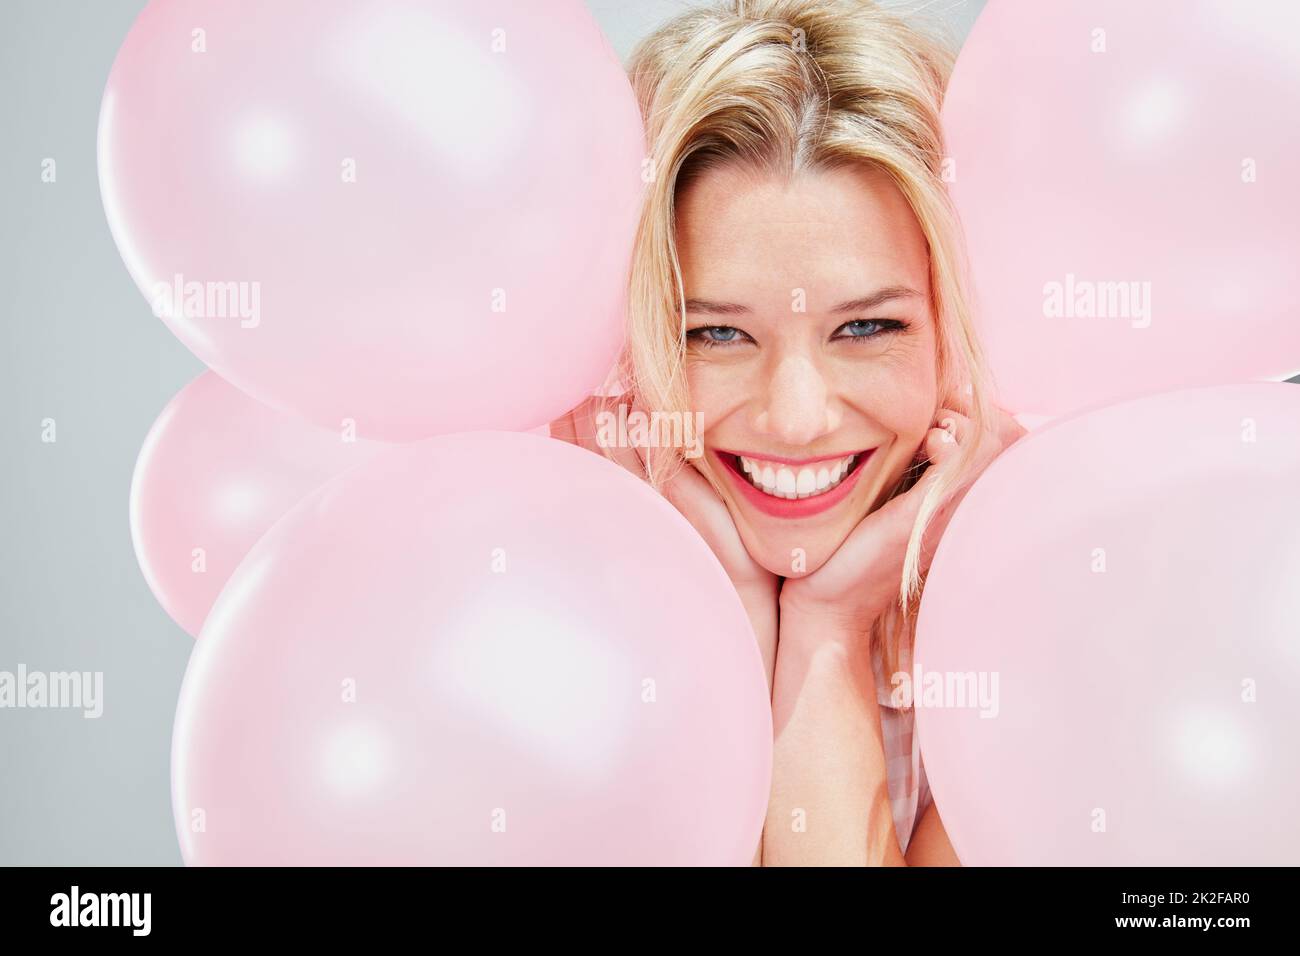 Ich weiß nicht, warum, aber ich bin so glücklich. Kurzer Schuss einer schönen jungen Frau, die mit rosa Luftballons posiert. Stockfoto